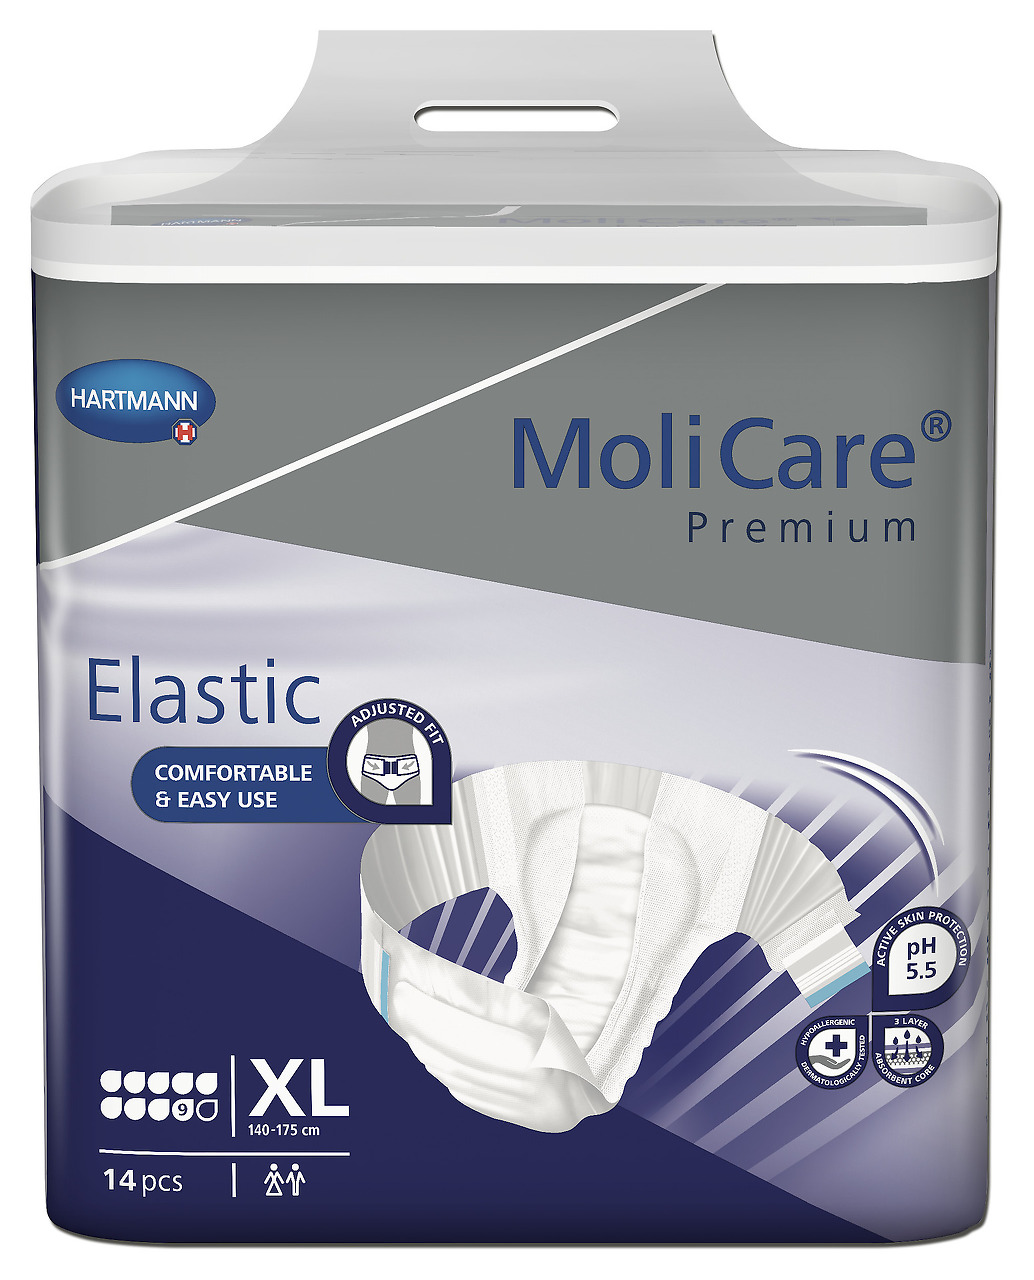 Absorpční kalhotky MoliCare Elastic 9 kapek XL